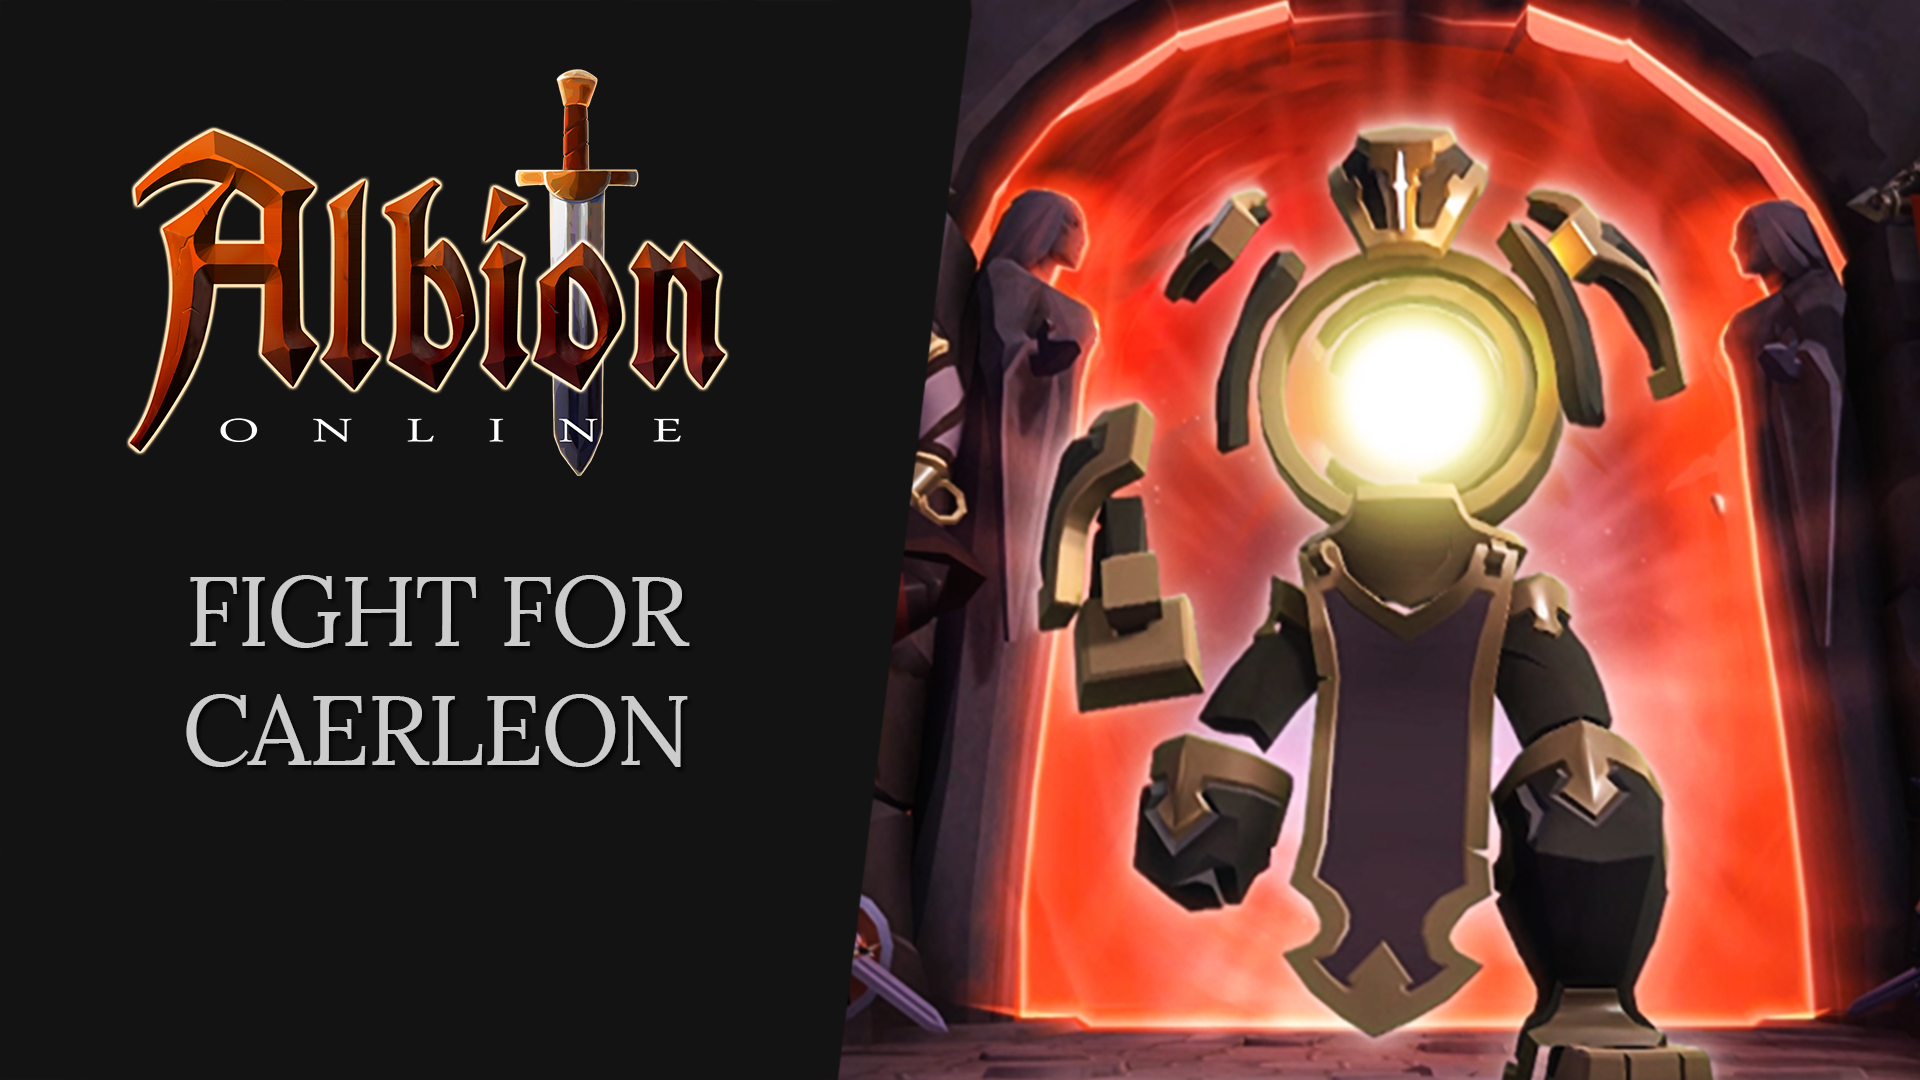 Albion Online no Steam